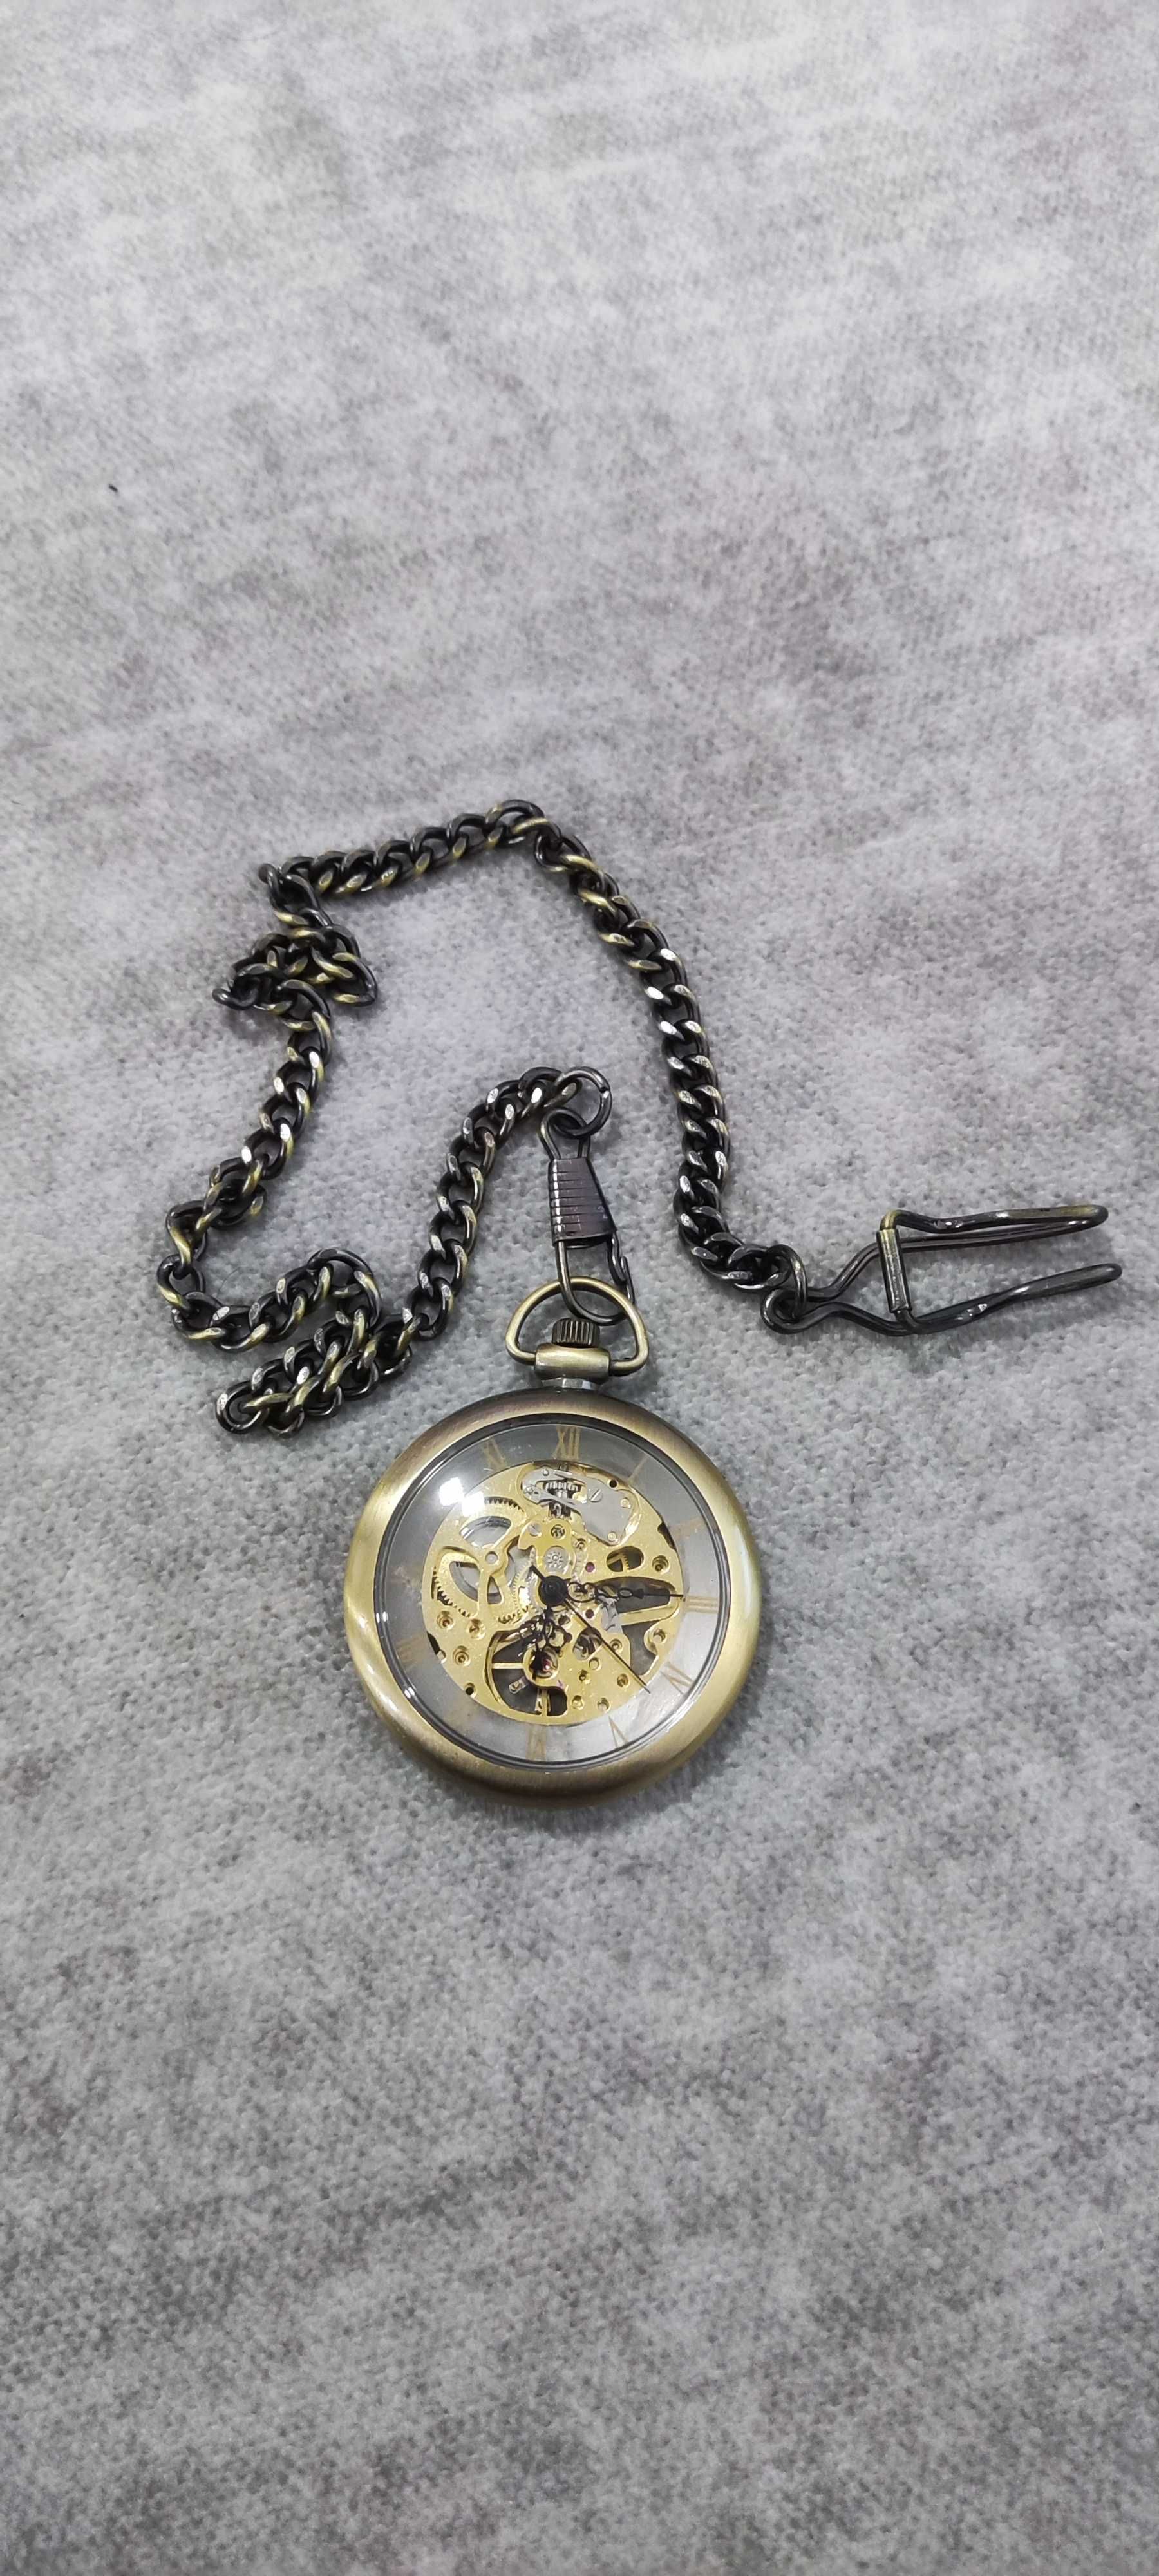 Relógio de Bolso Vintage Gorden Numeração Romana